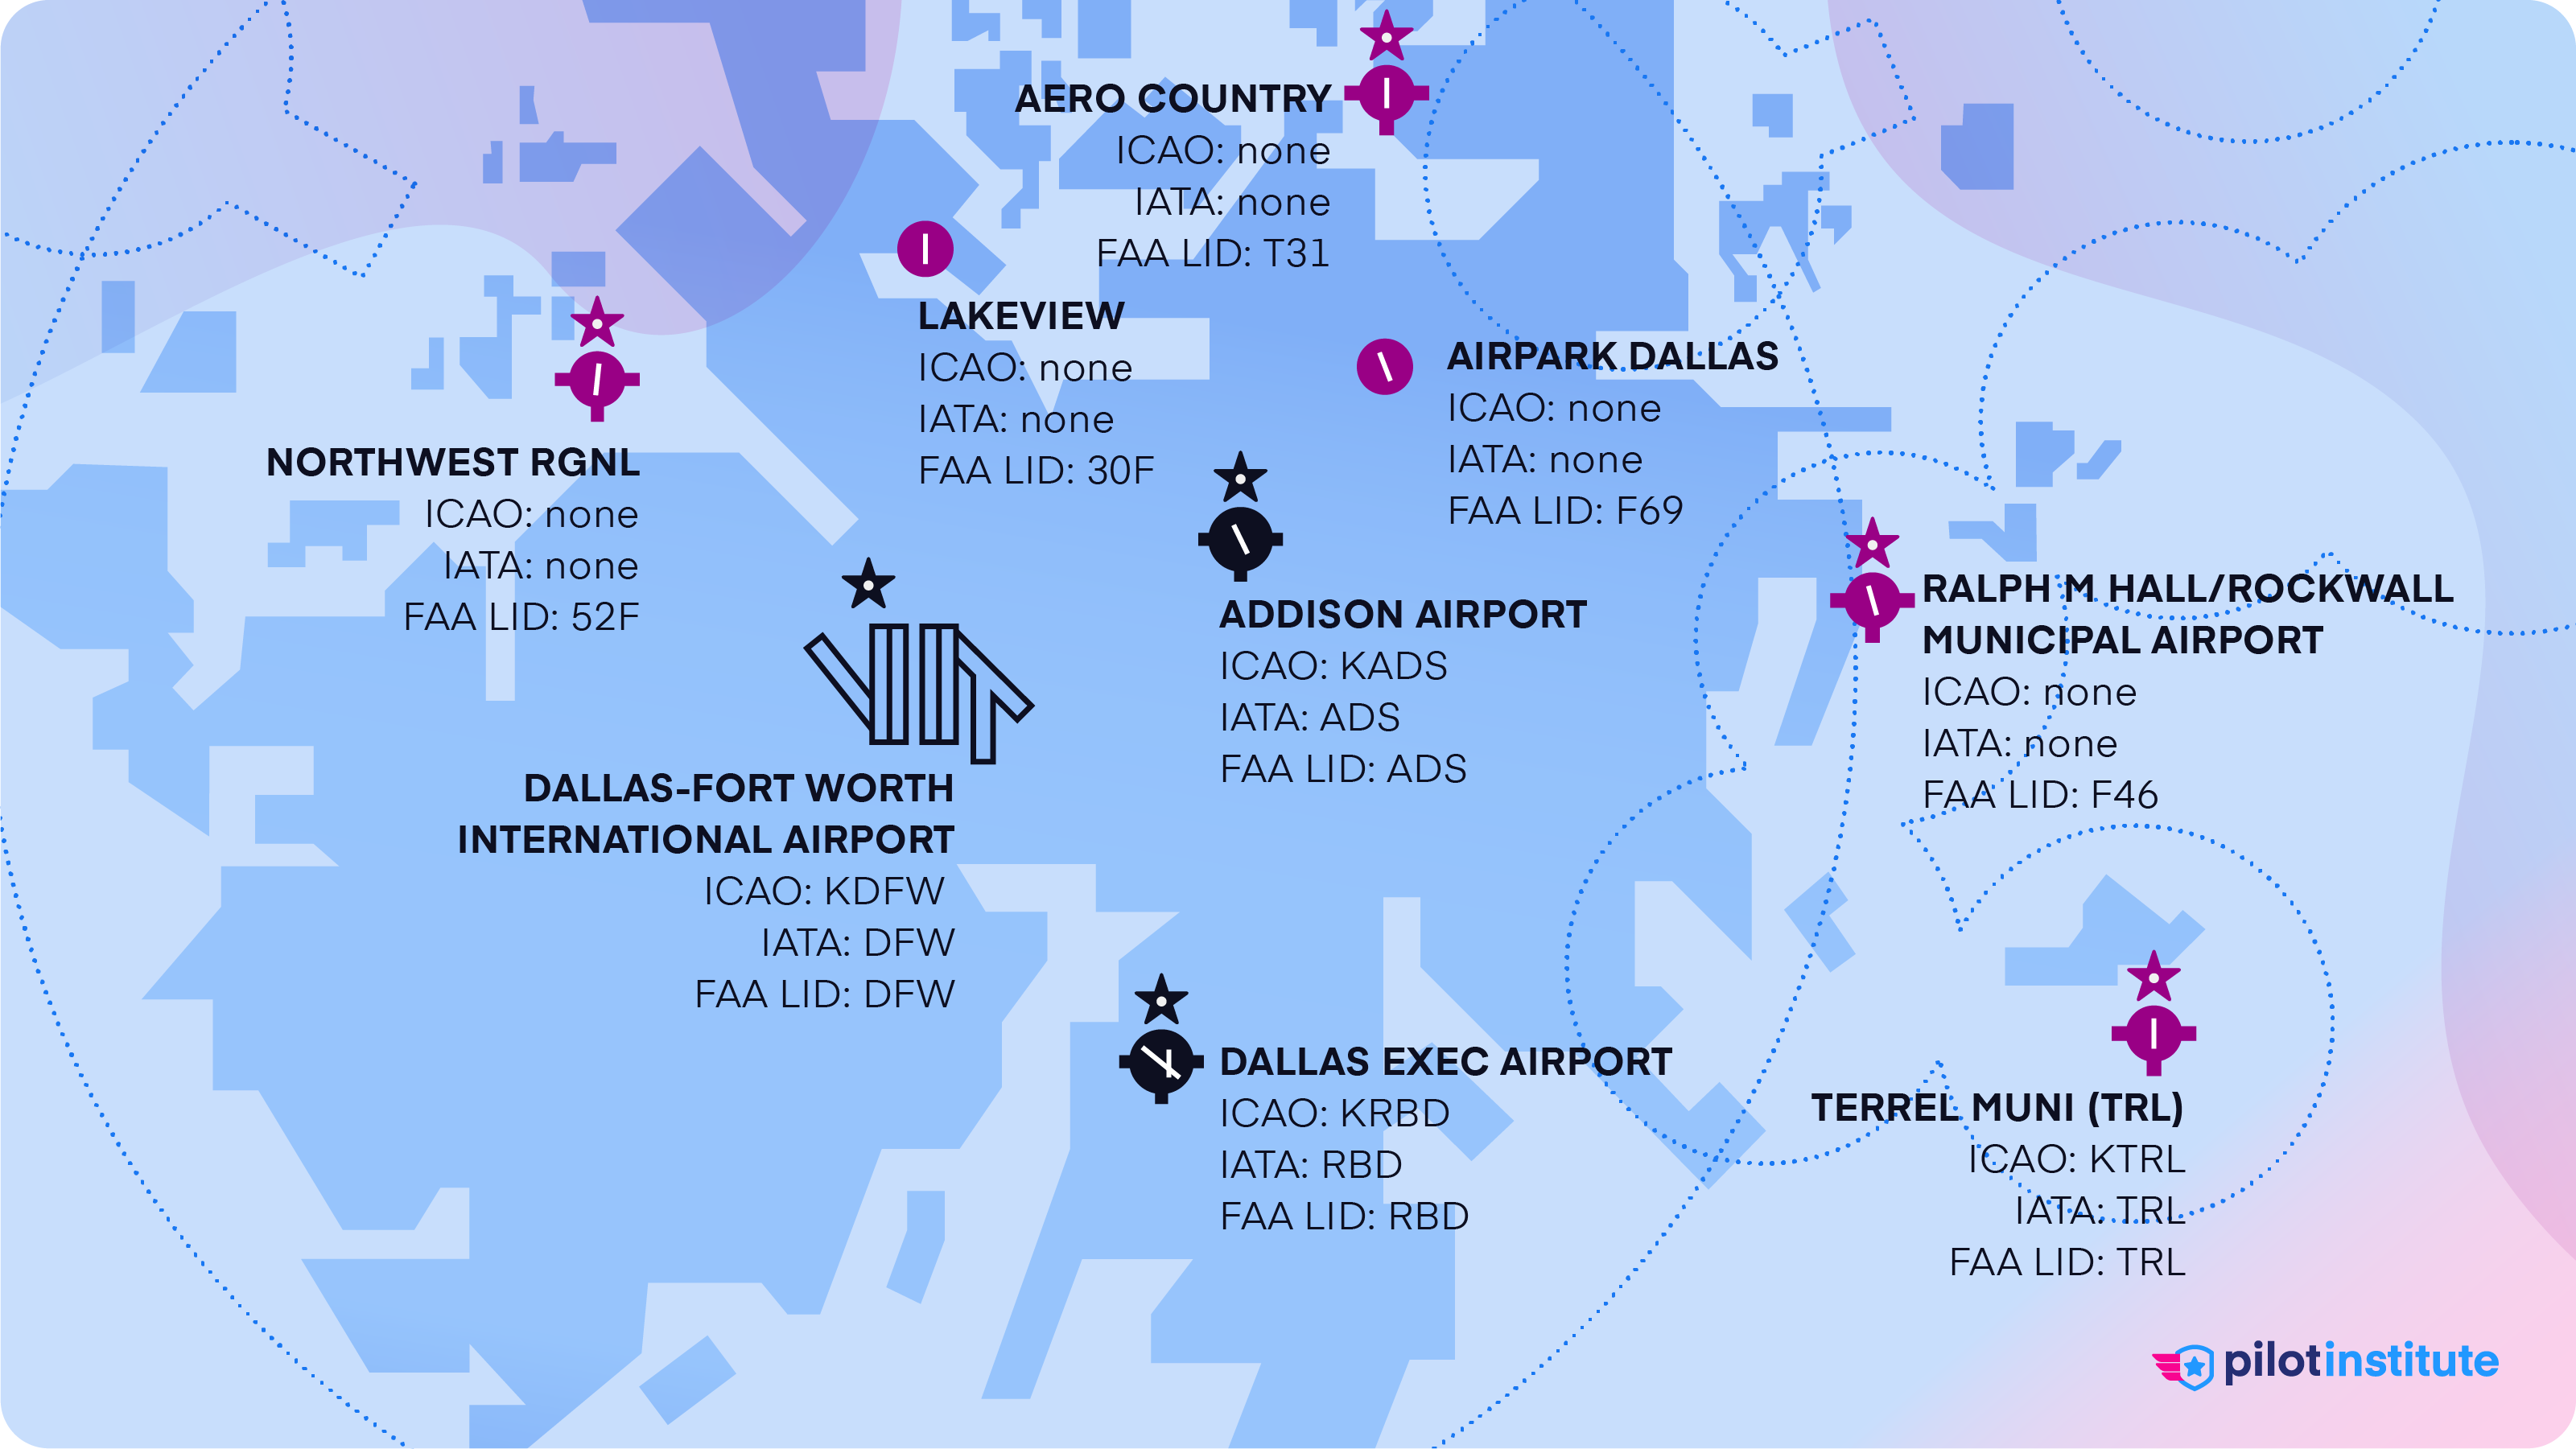 Airport Codes Explained (FAA, ICAO, IATA)